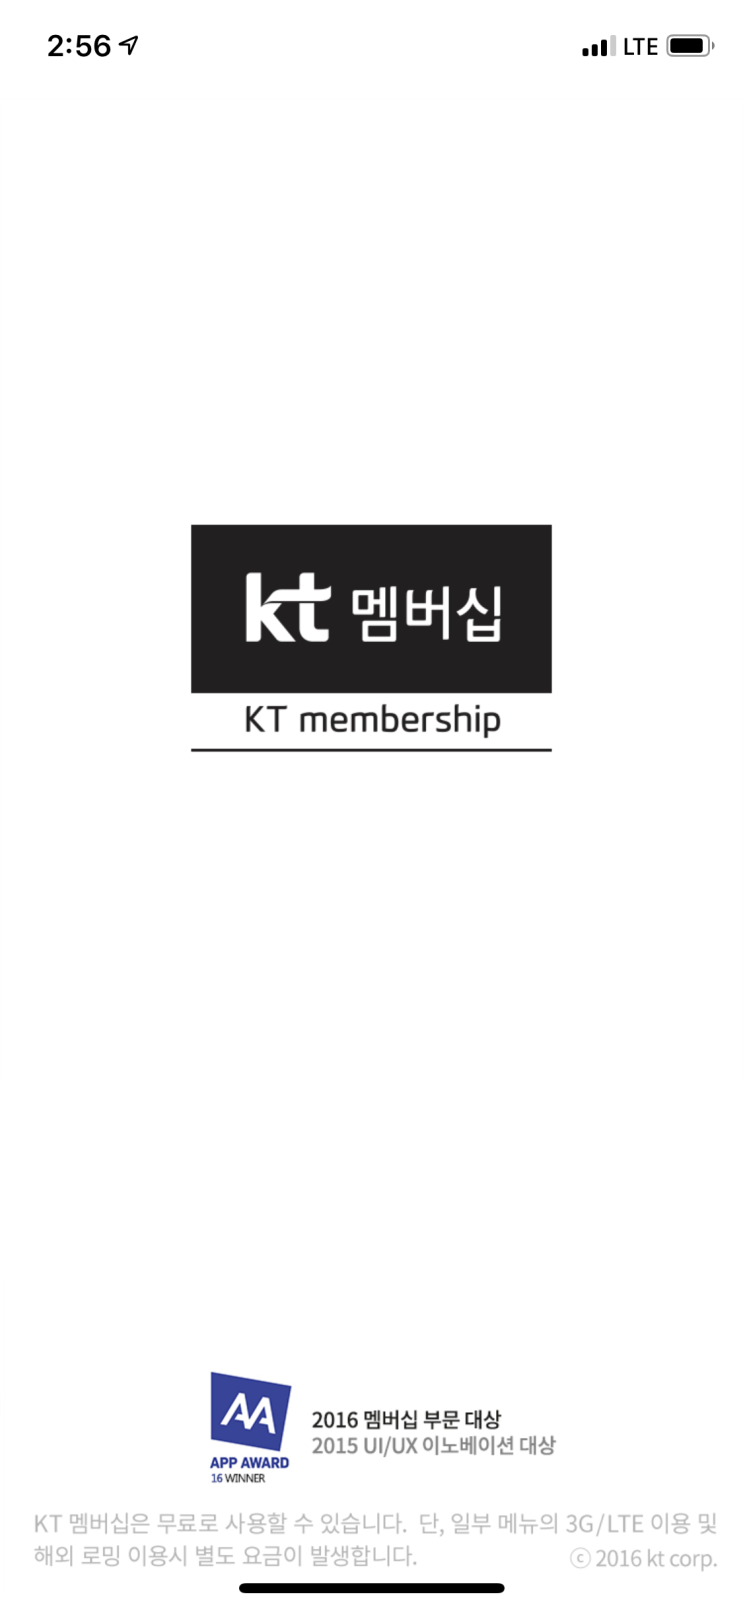 KT 멤버십 VIP회원이라면 한달에 한번씩 무료 영화보는 방법